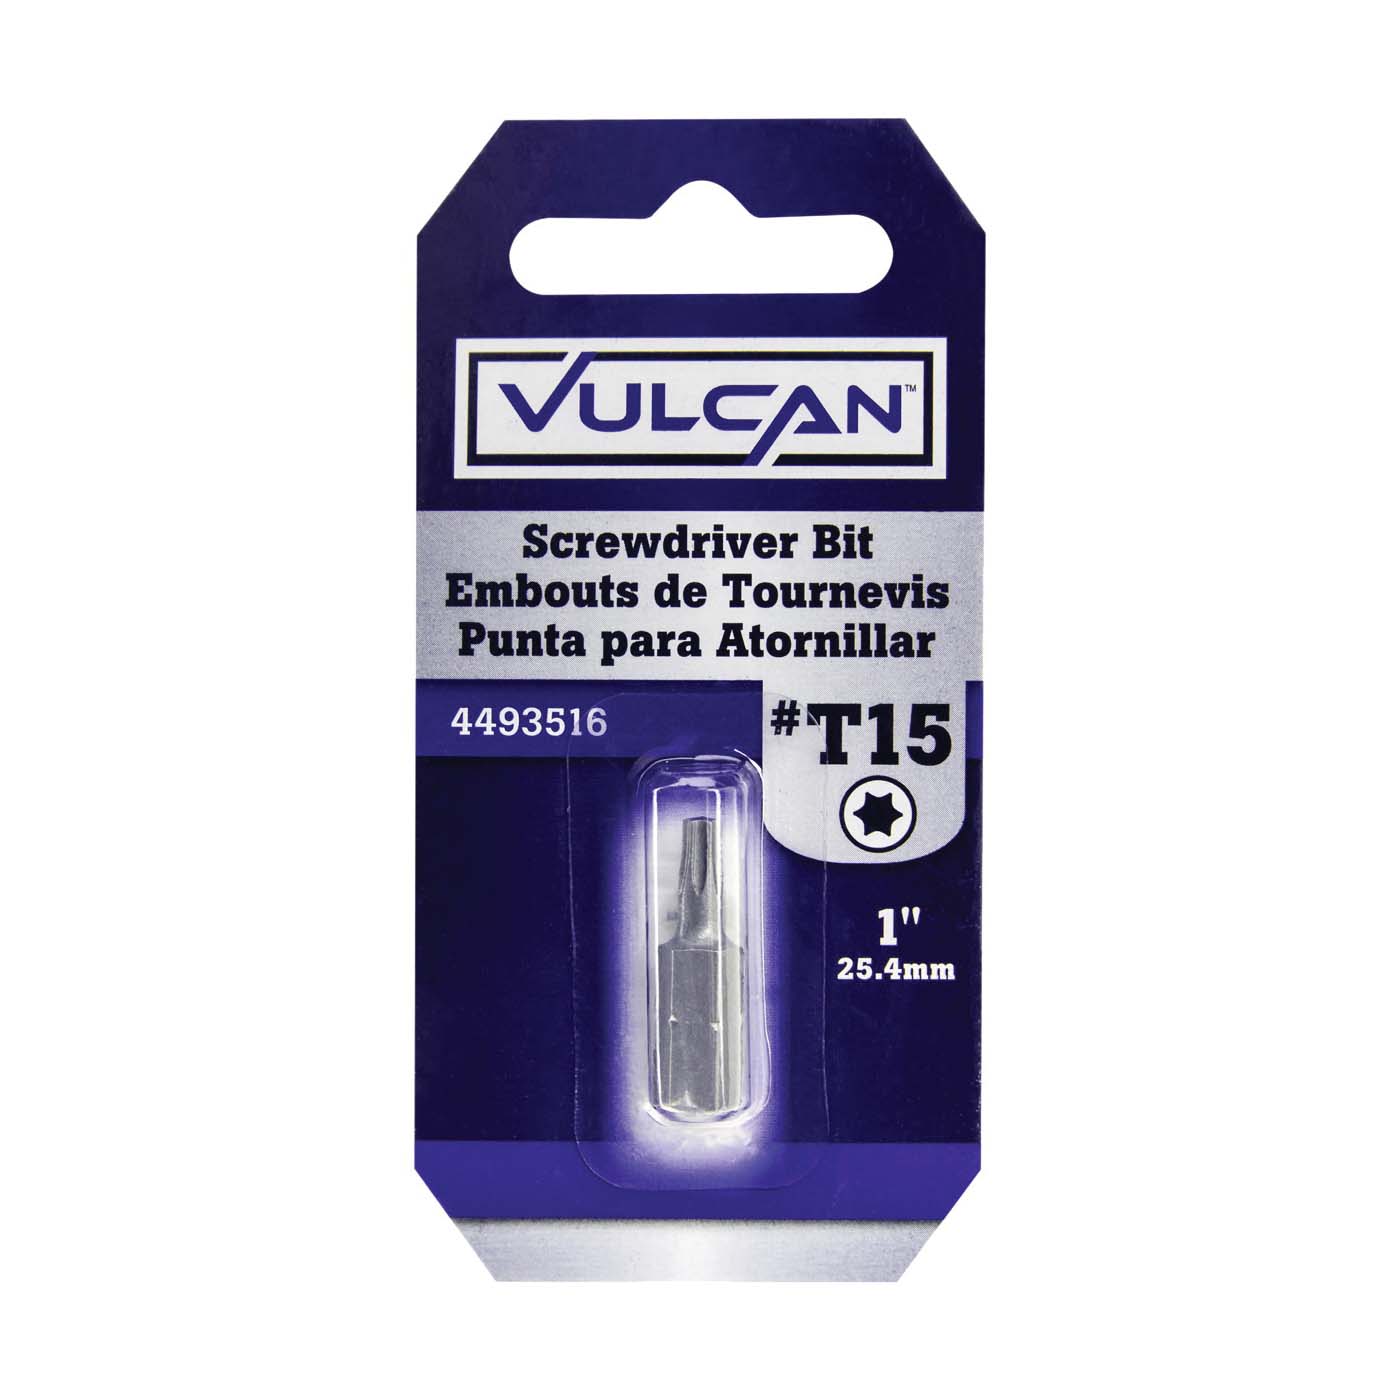 Vulcan 307321OR